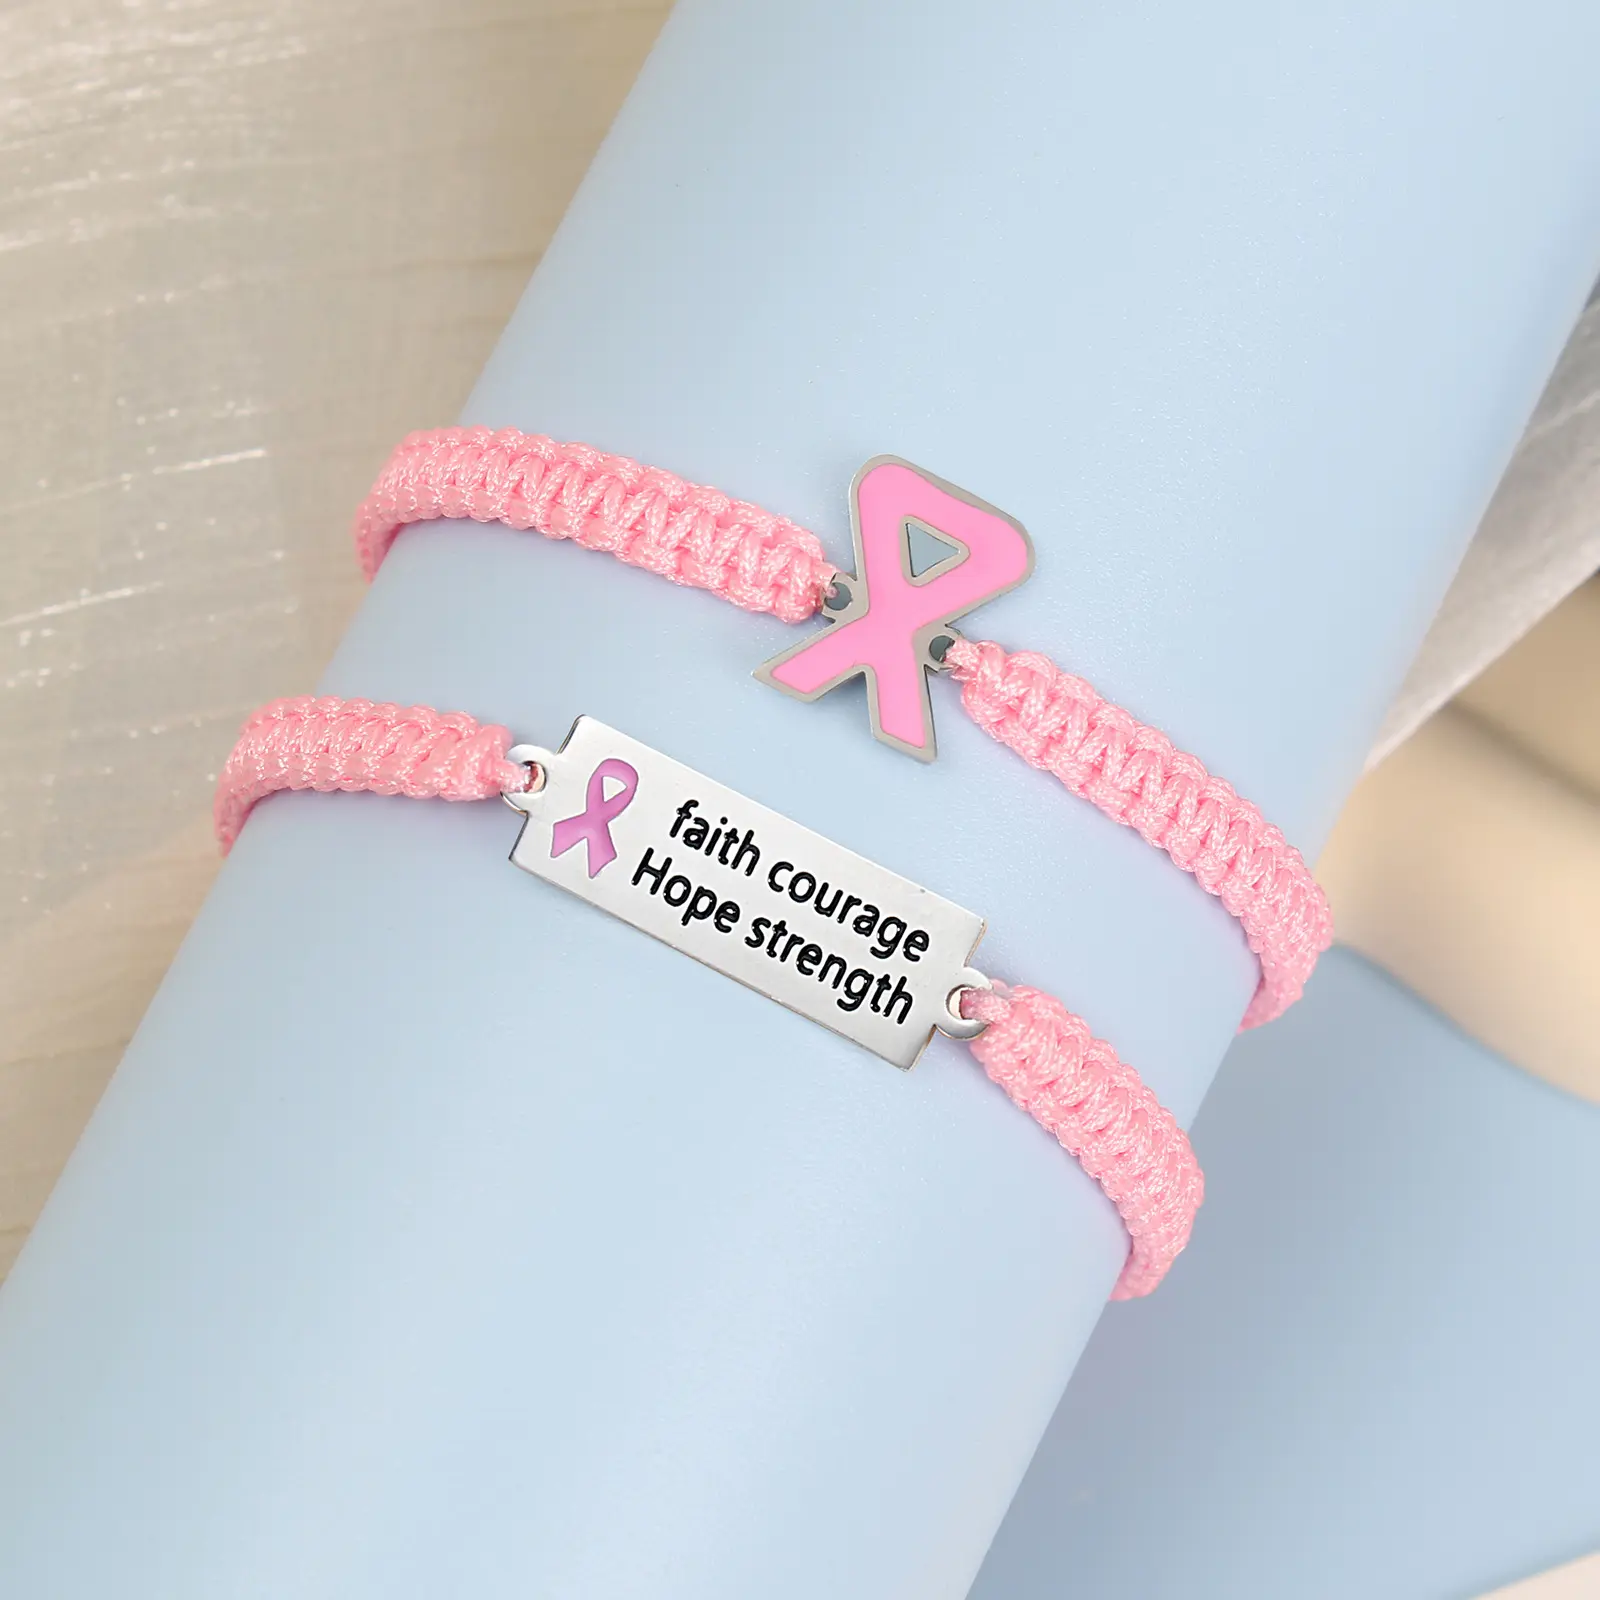 हस्तनिर्मित आशा विश्वास शक्ति साहस प्रेरणादायक रिस्टबैंड स्तन कैंसर जागरूकता गुलाबी रिबन कंगन